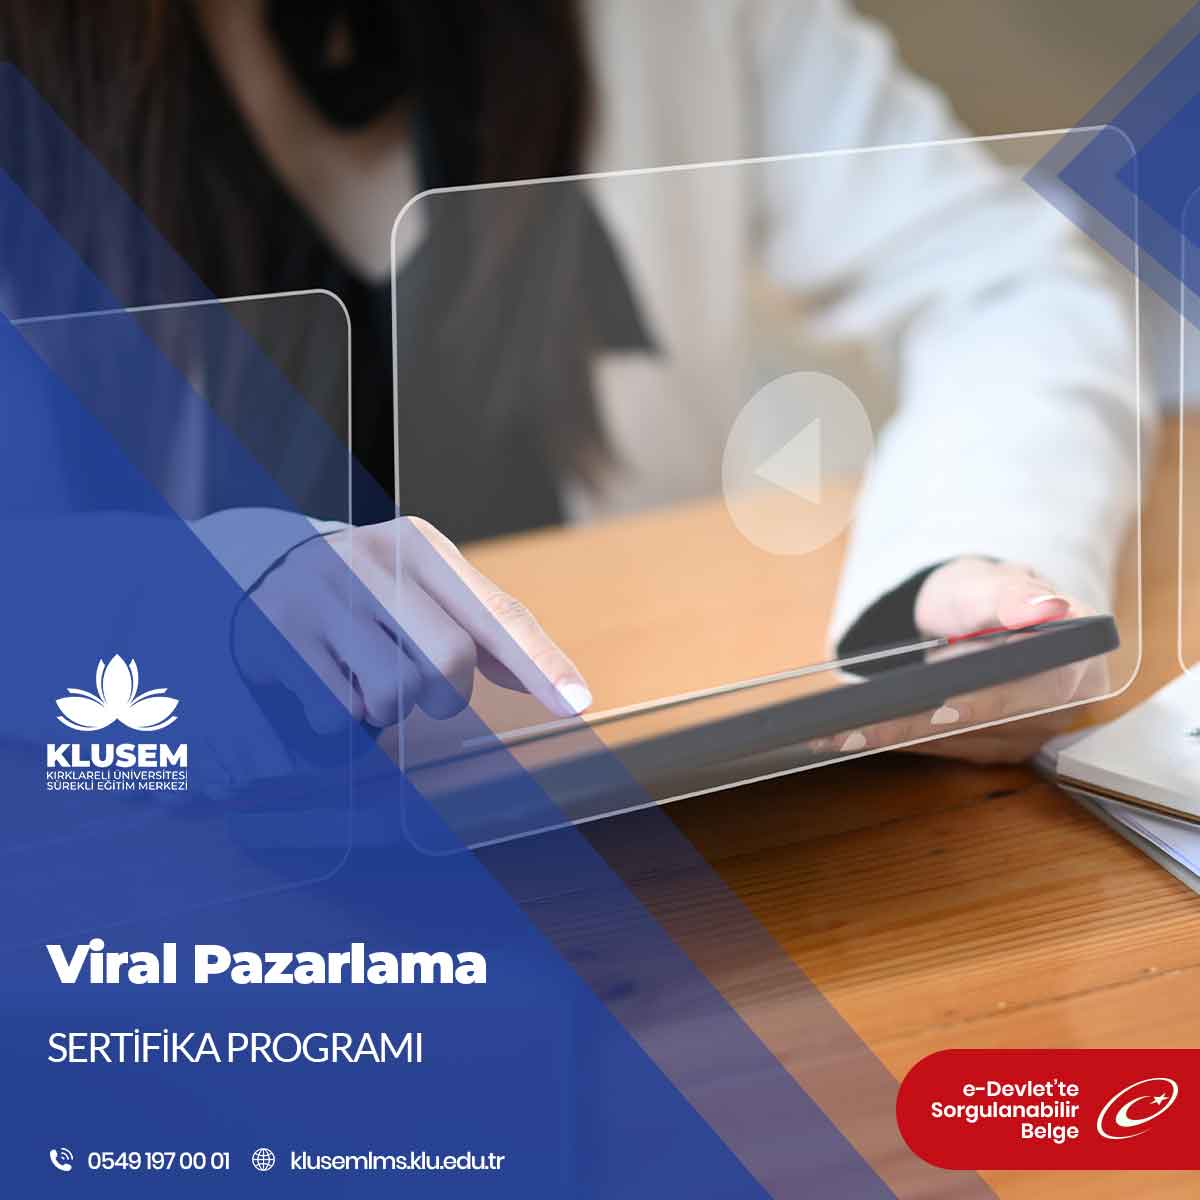 Viral Pazarlama Eğitim Programı, bu etkili pazarlama stratejisini anlamayı ve uygulamayı hedefleyenlere yönelik bir eğitim programıdır.